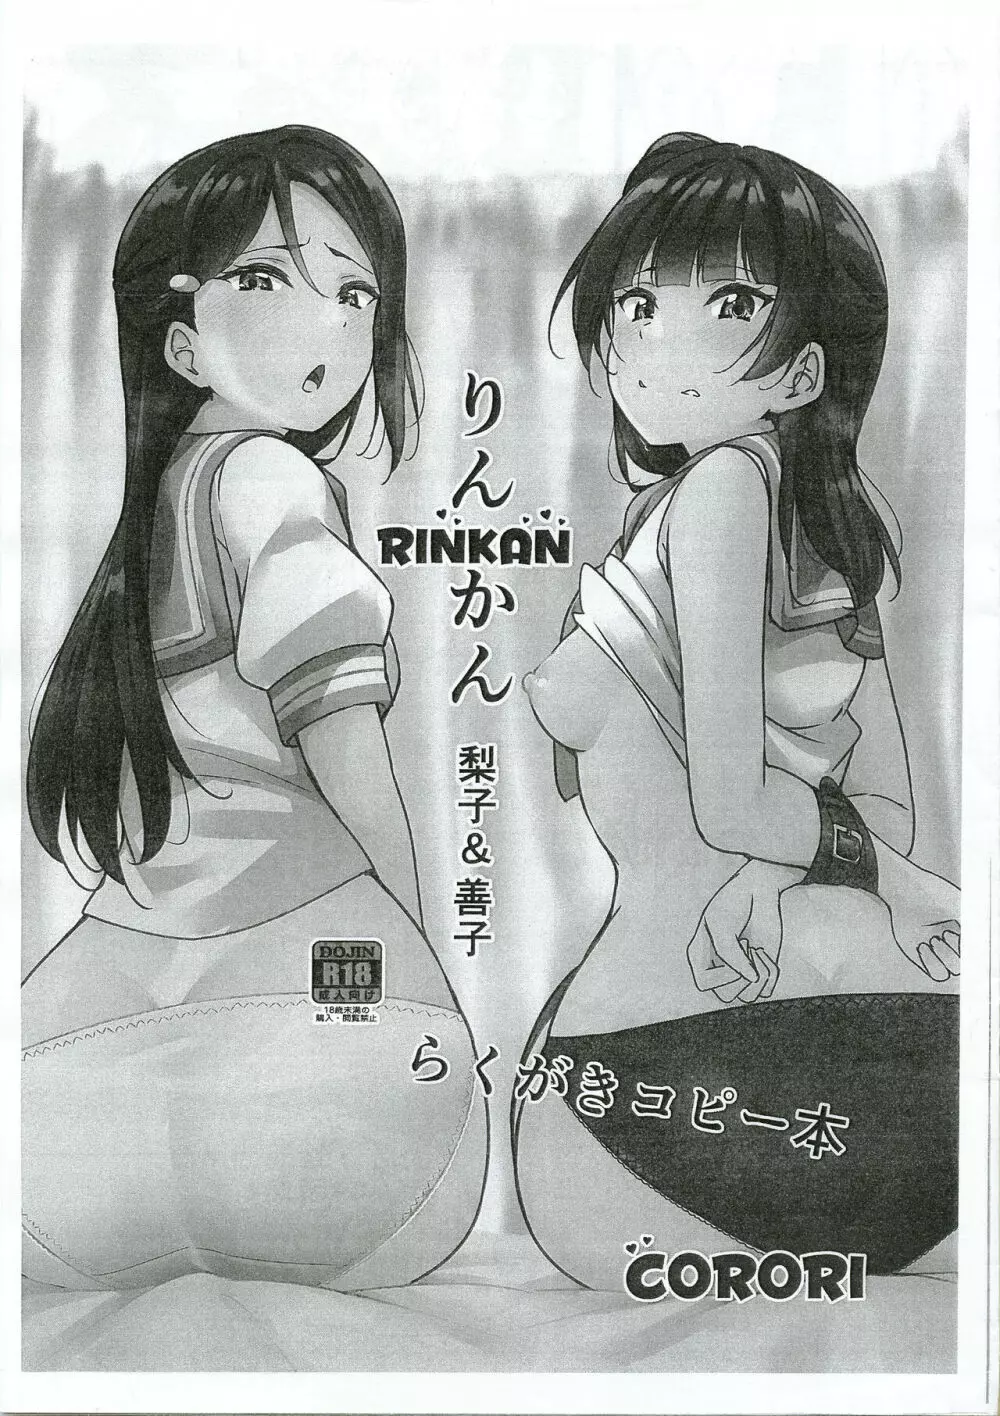 Rinkan 梨子と善子 らくがきコピー本 1ページ